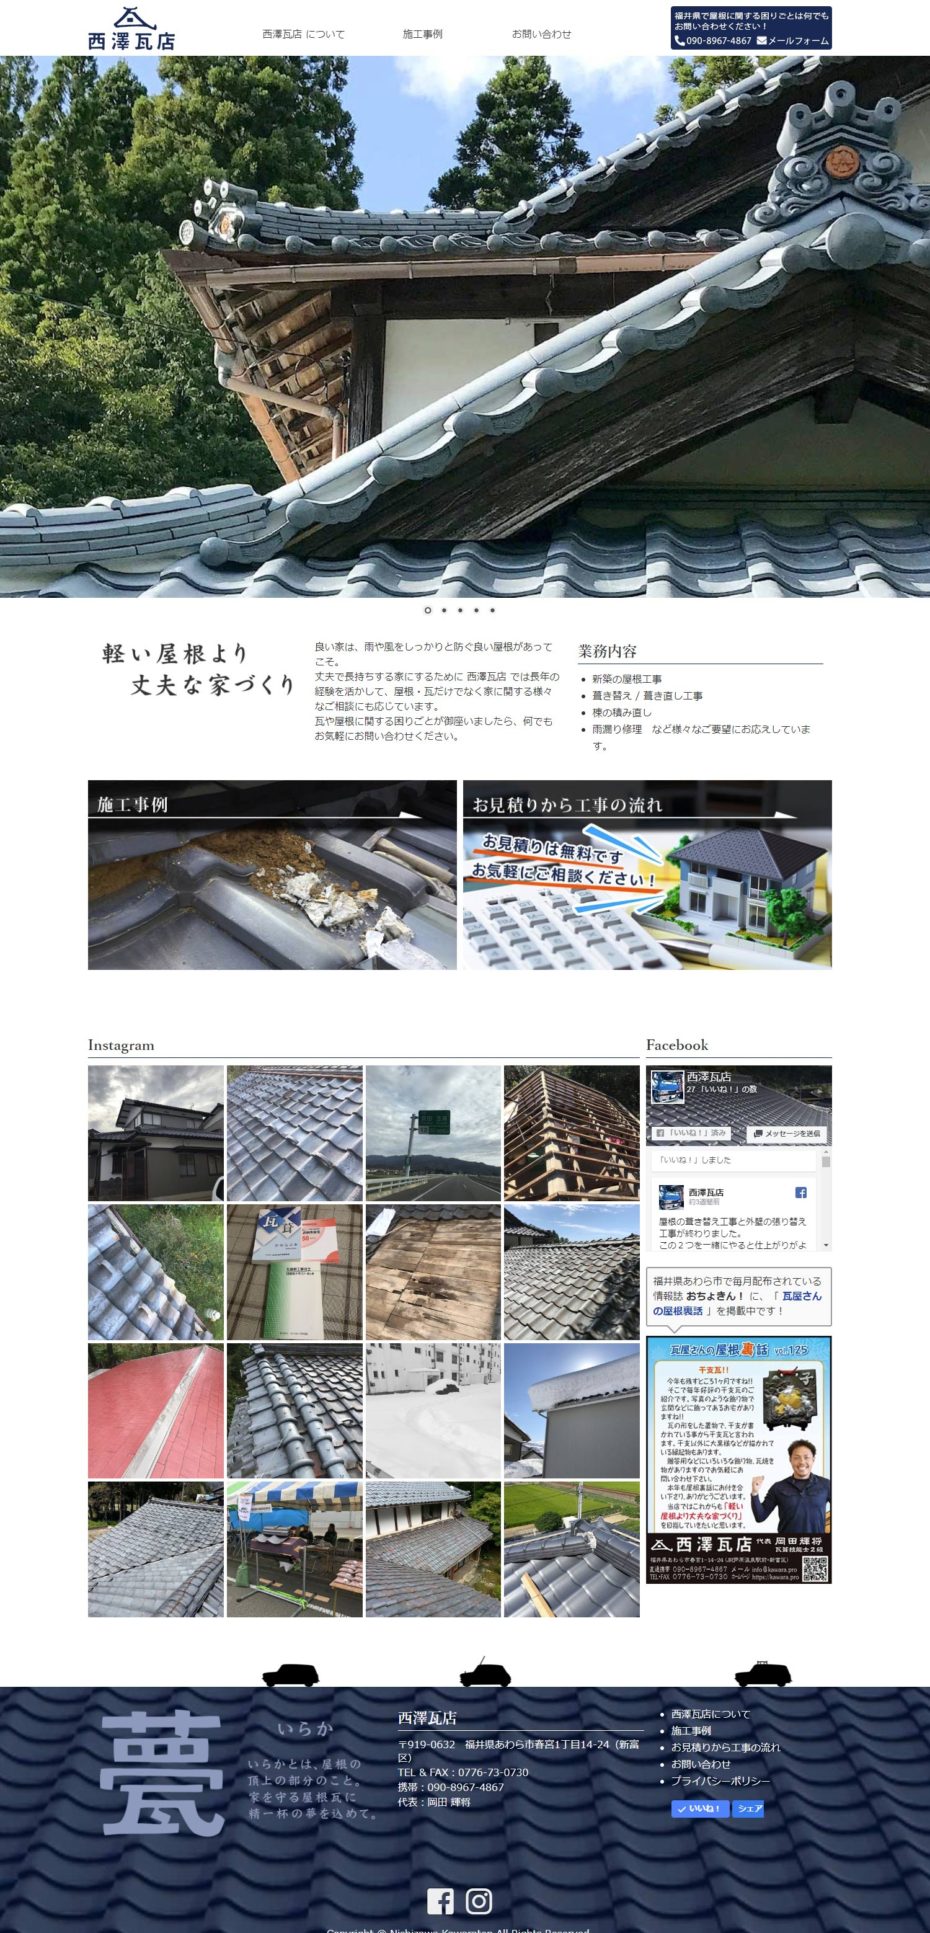 西澤瓦店 ウェブデザイン ウェブサイト構築 を行いました。福井市やあわら市で屋根工事をお考えの方は 西澤瓦店 様へご連絡ください！